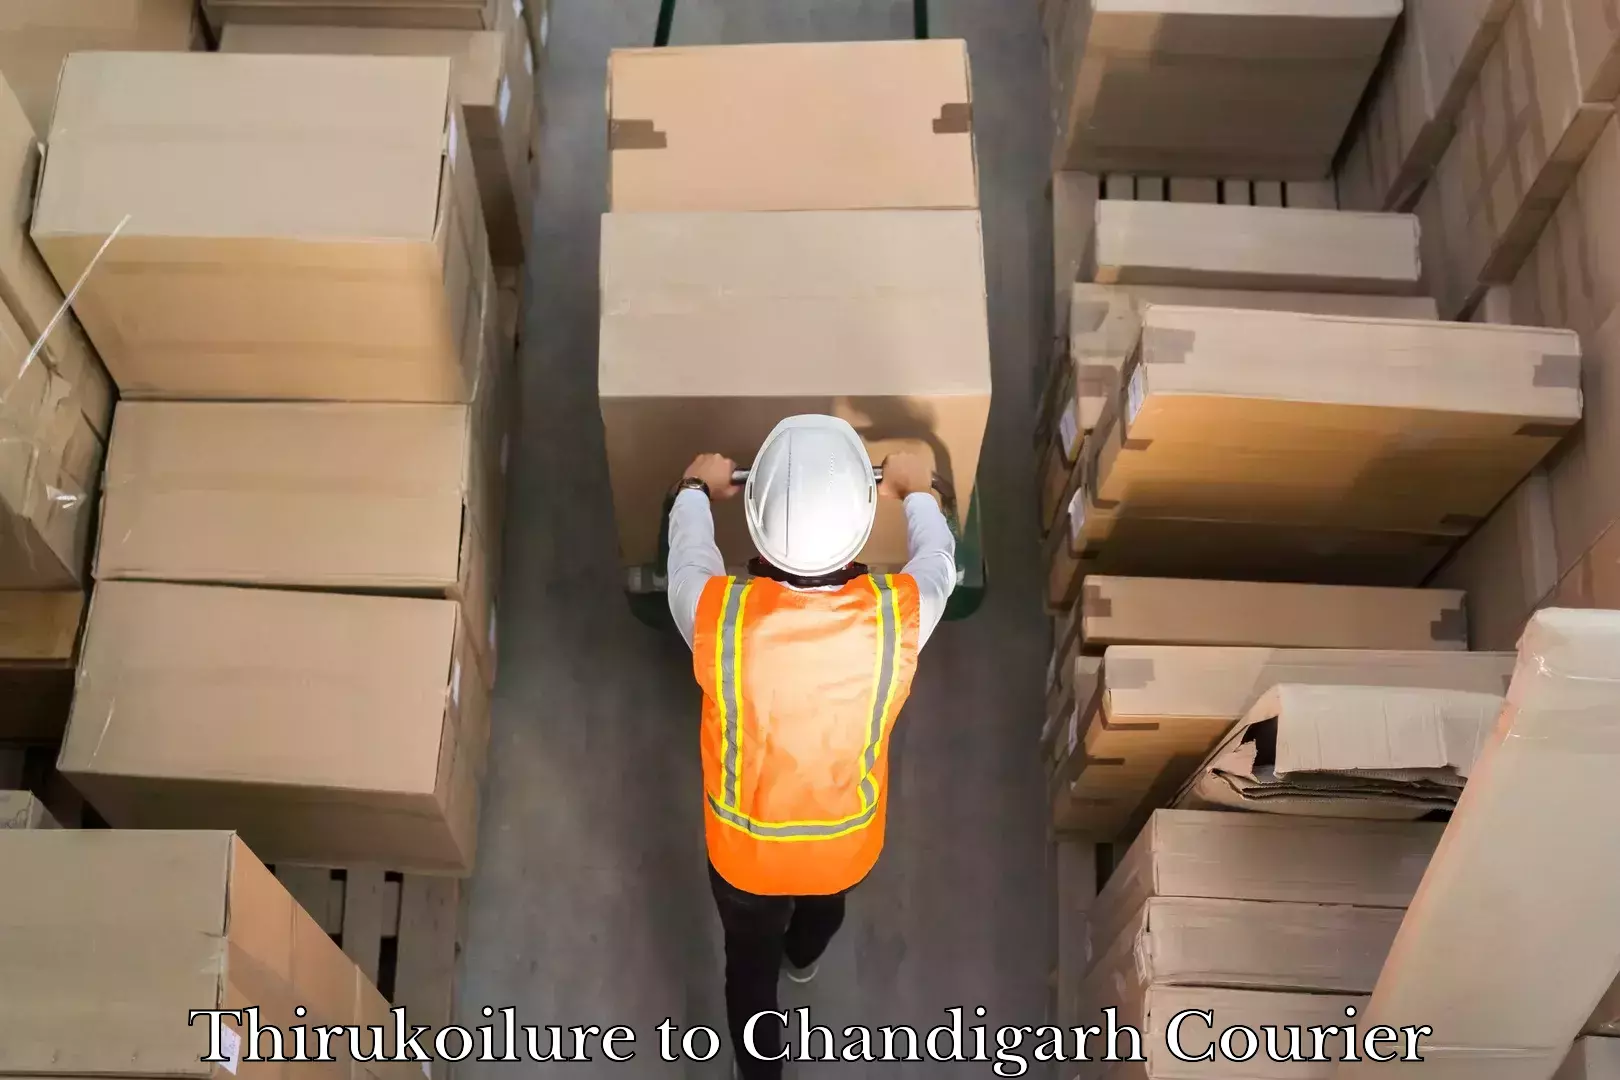 Efficient parcel transport Thirukoilure to Chandigarh